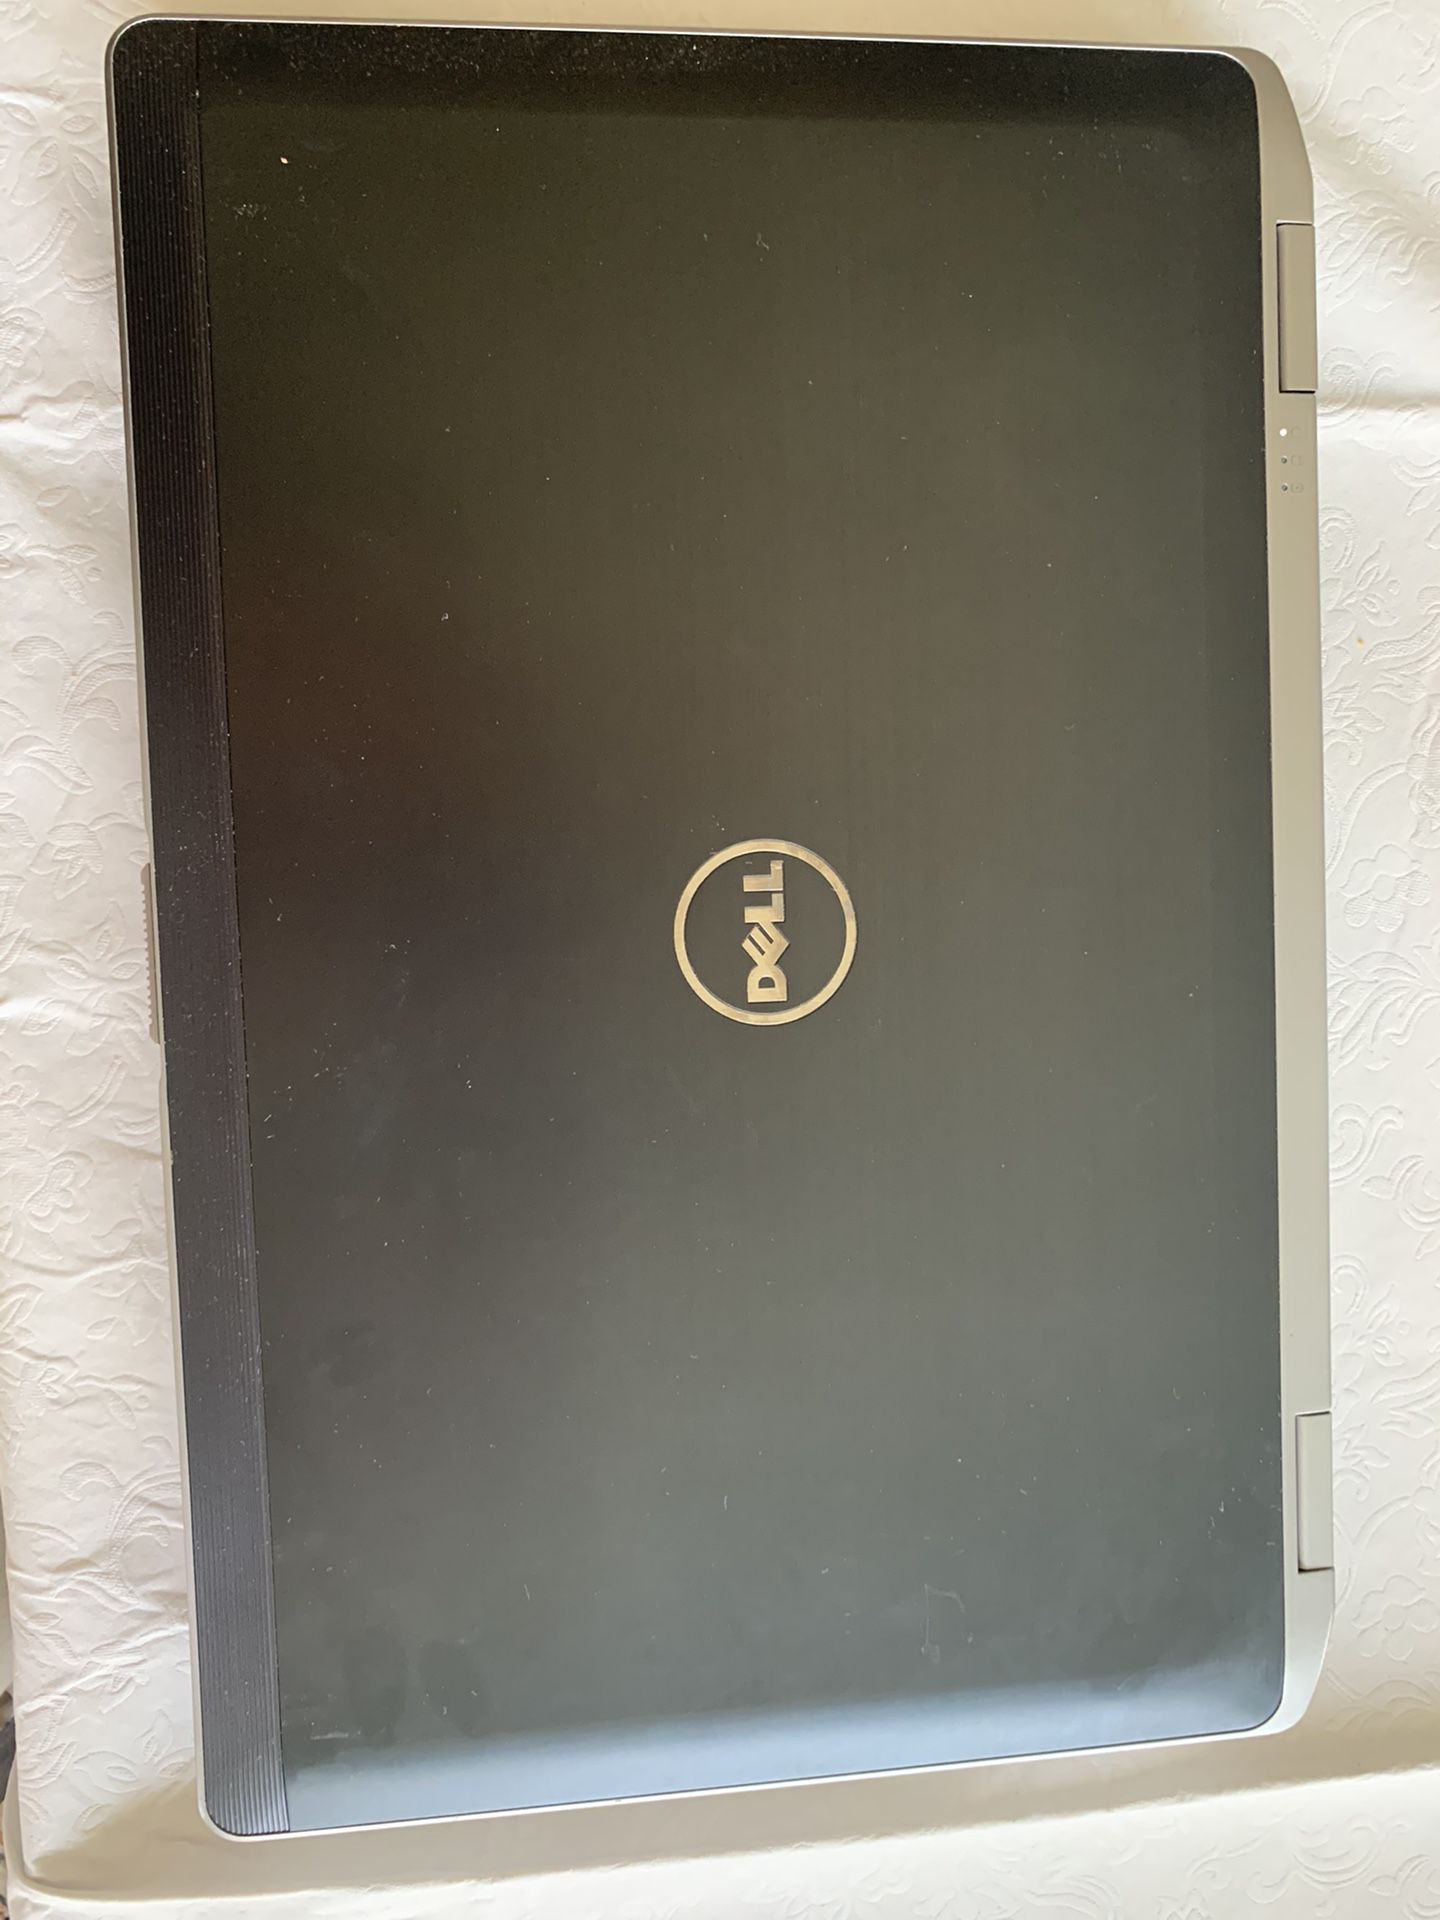 Dell latitude E6530 Laptop, i5